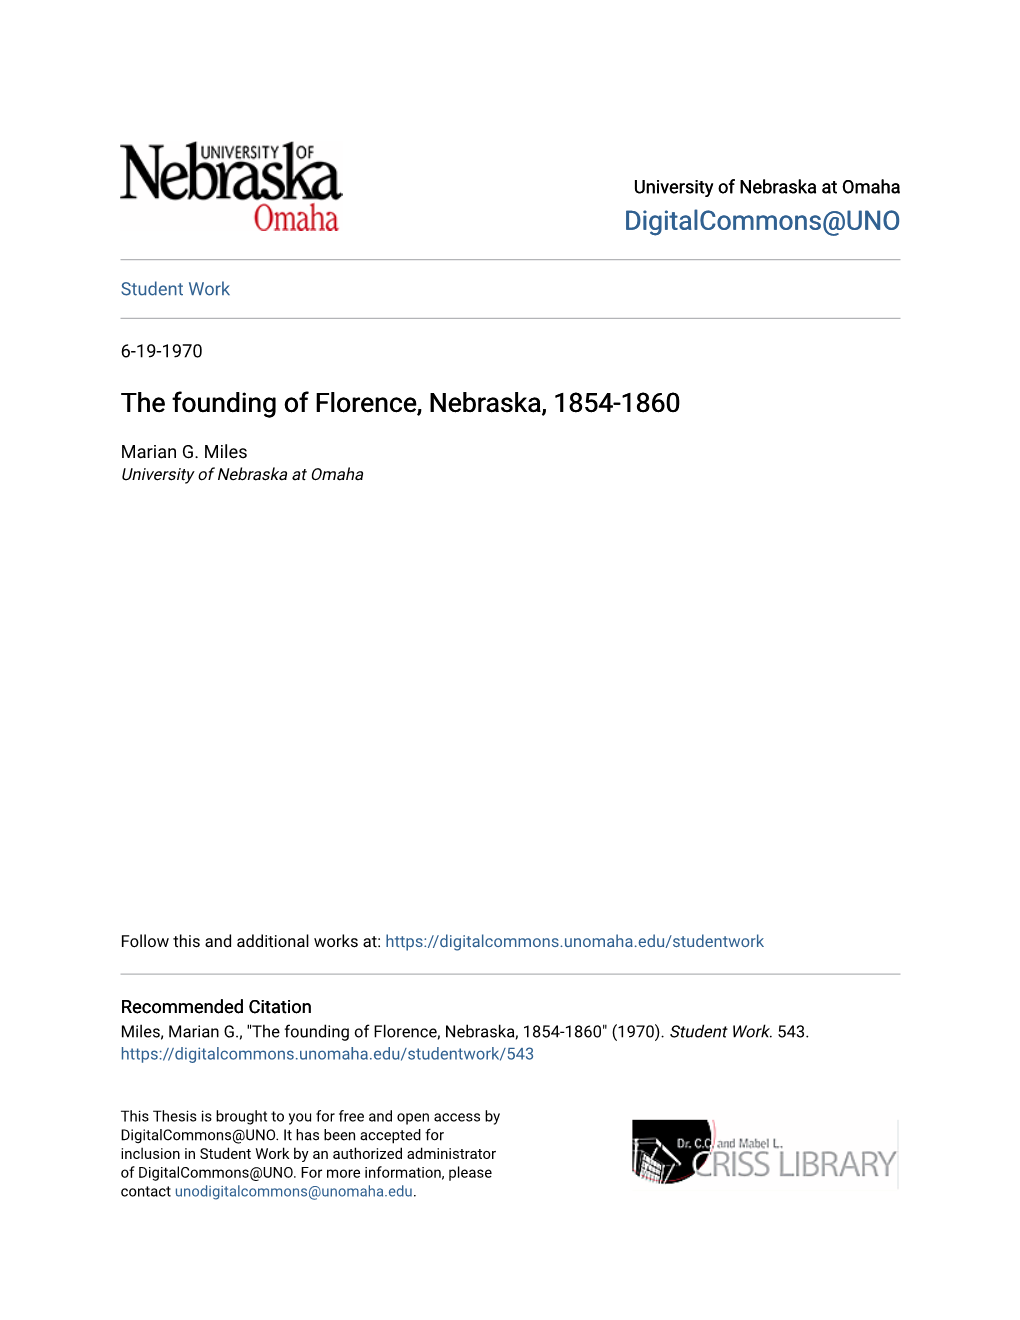 The Founding of Florence, Nebraska, 1854-1860